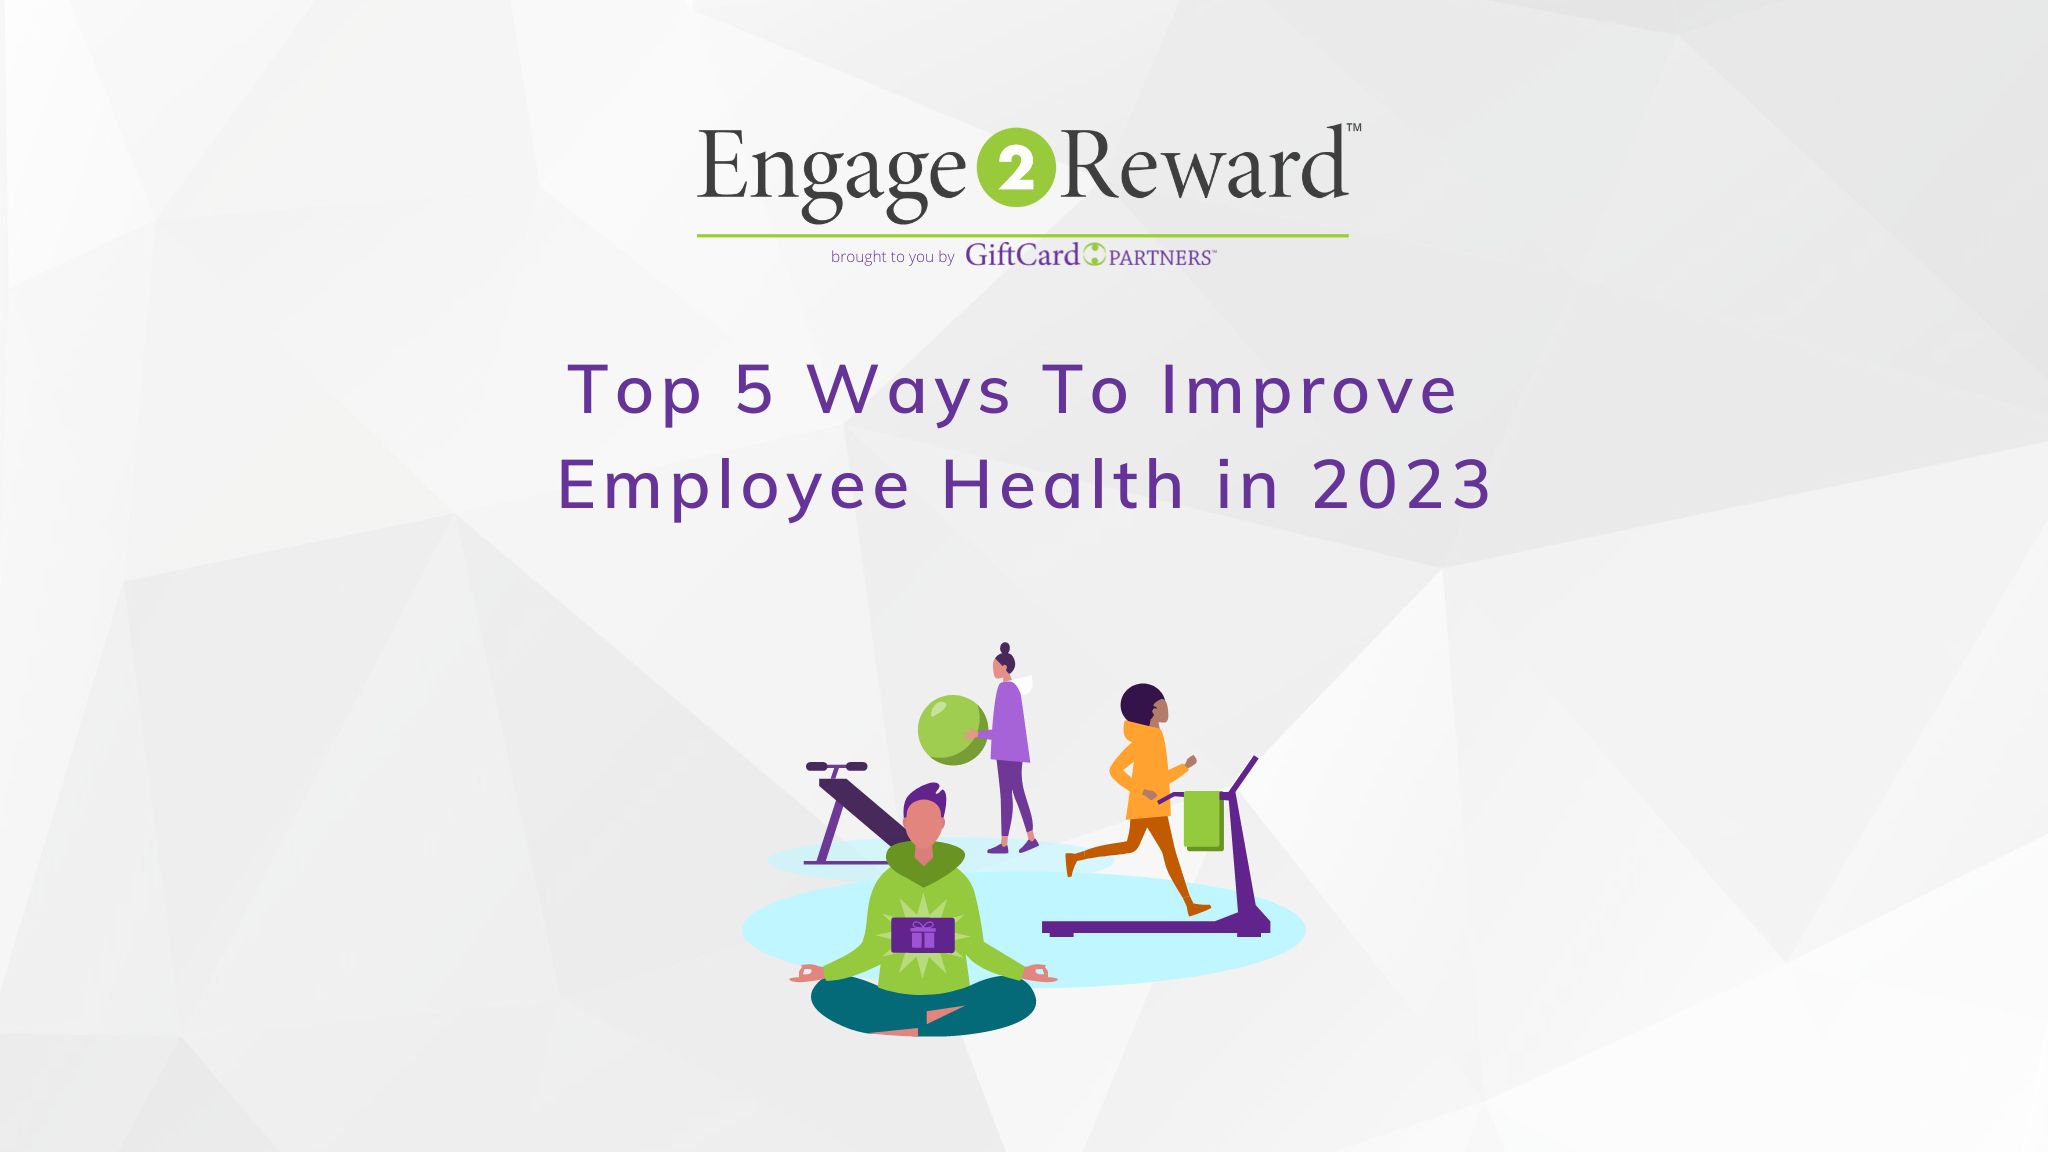 Top 5 Ways To Improve Employee Health in 2023